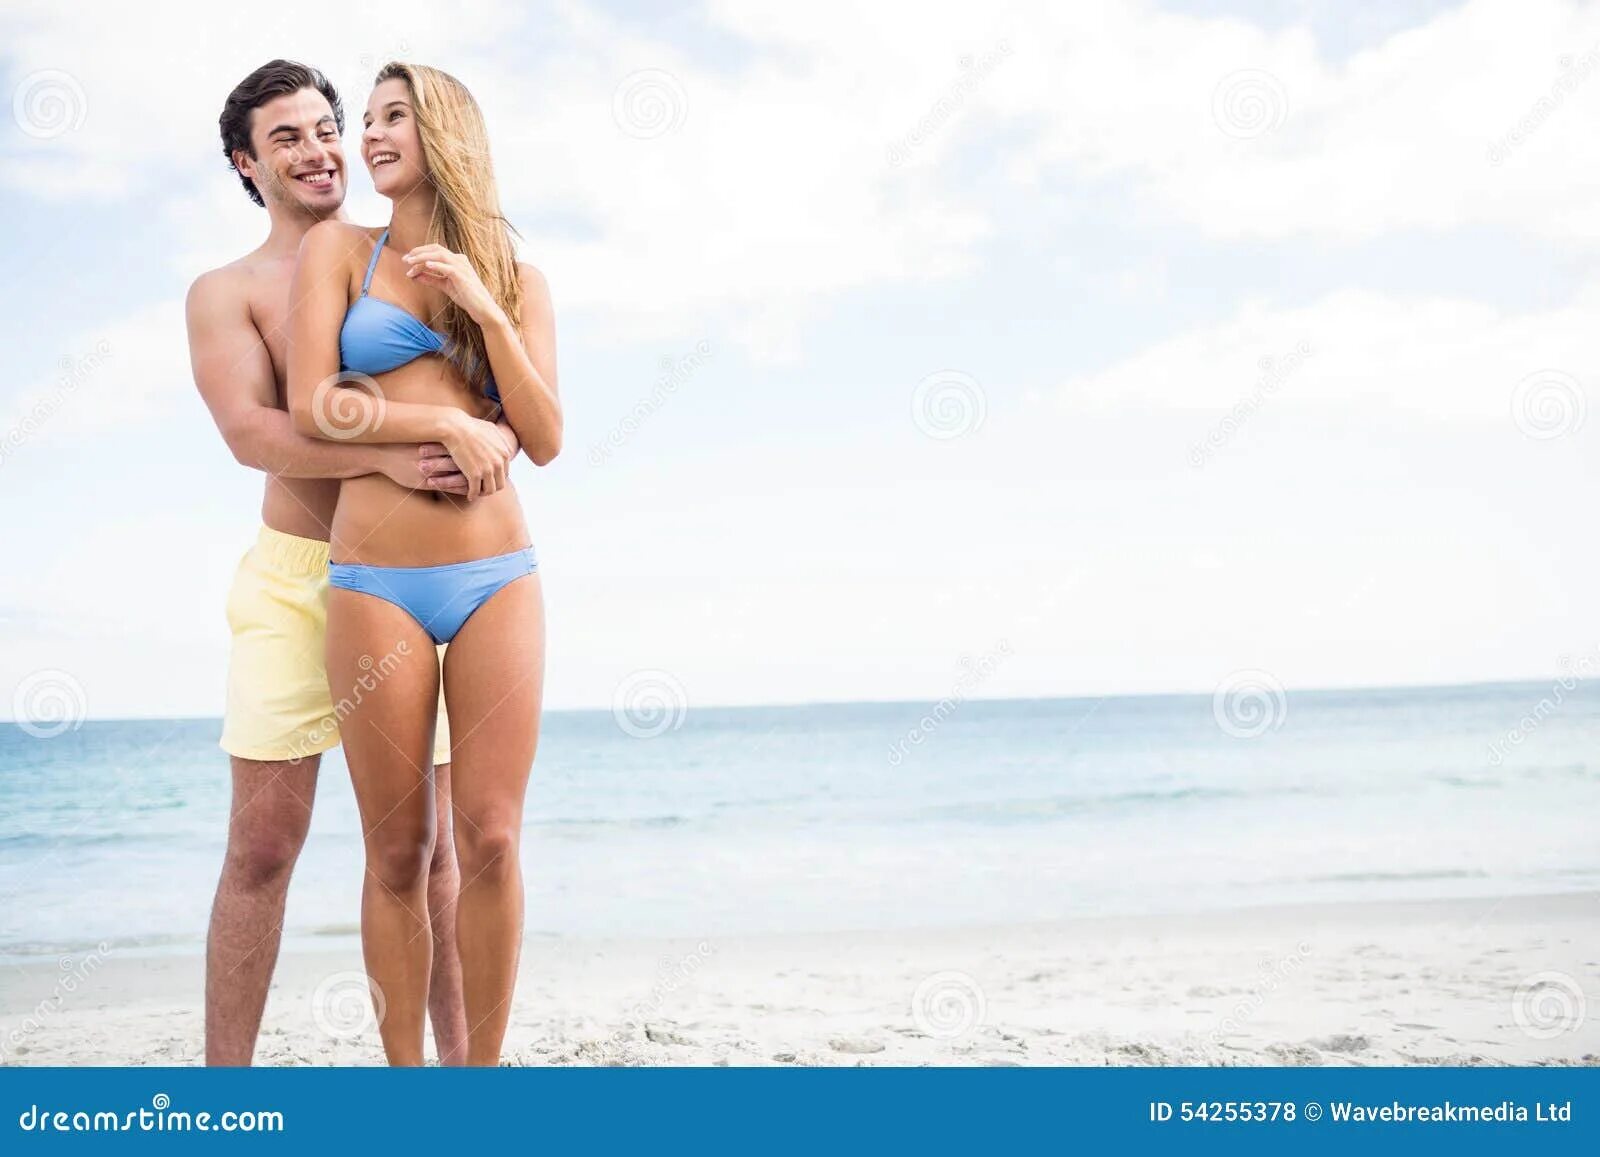 Купальник для пары. Пара в купальниках на пляже. Мужчина и женщина в купальниках. Девушка в купальнике с парнем. Пока муж на пляже